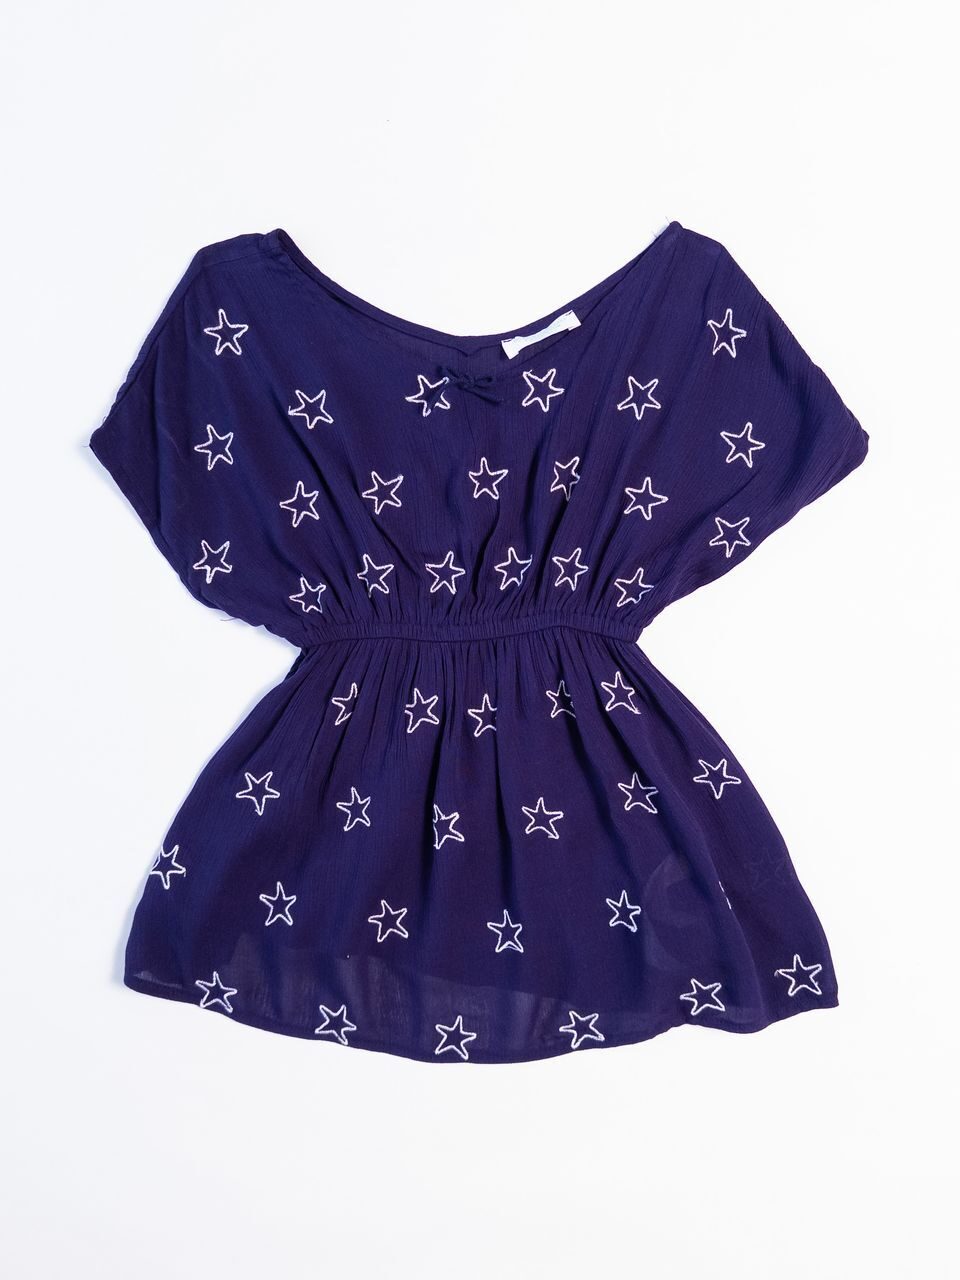 Платье-туника в поясе резинка цвет фиолетовый принт Звезды на рост 104 см 3-4 года Primark